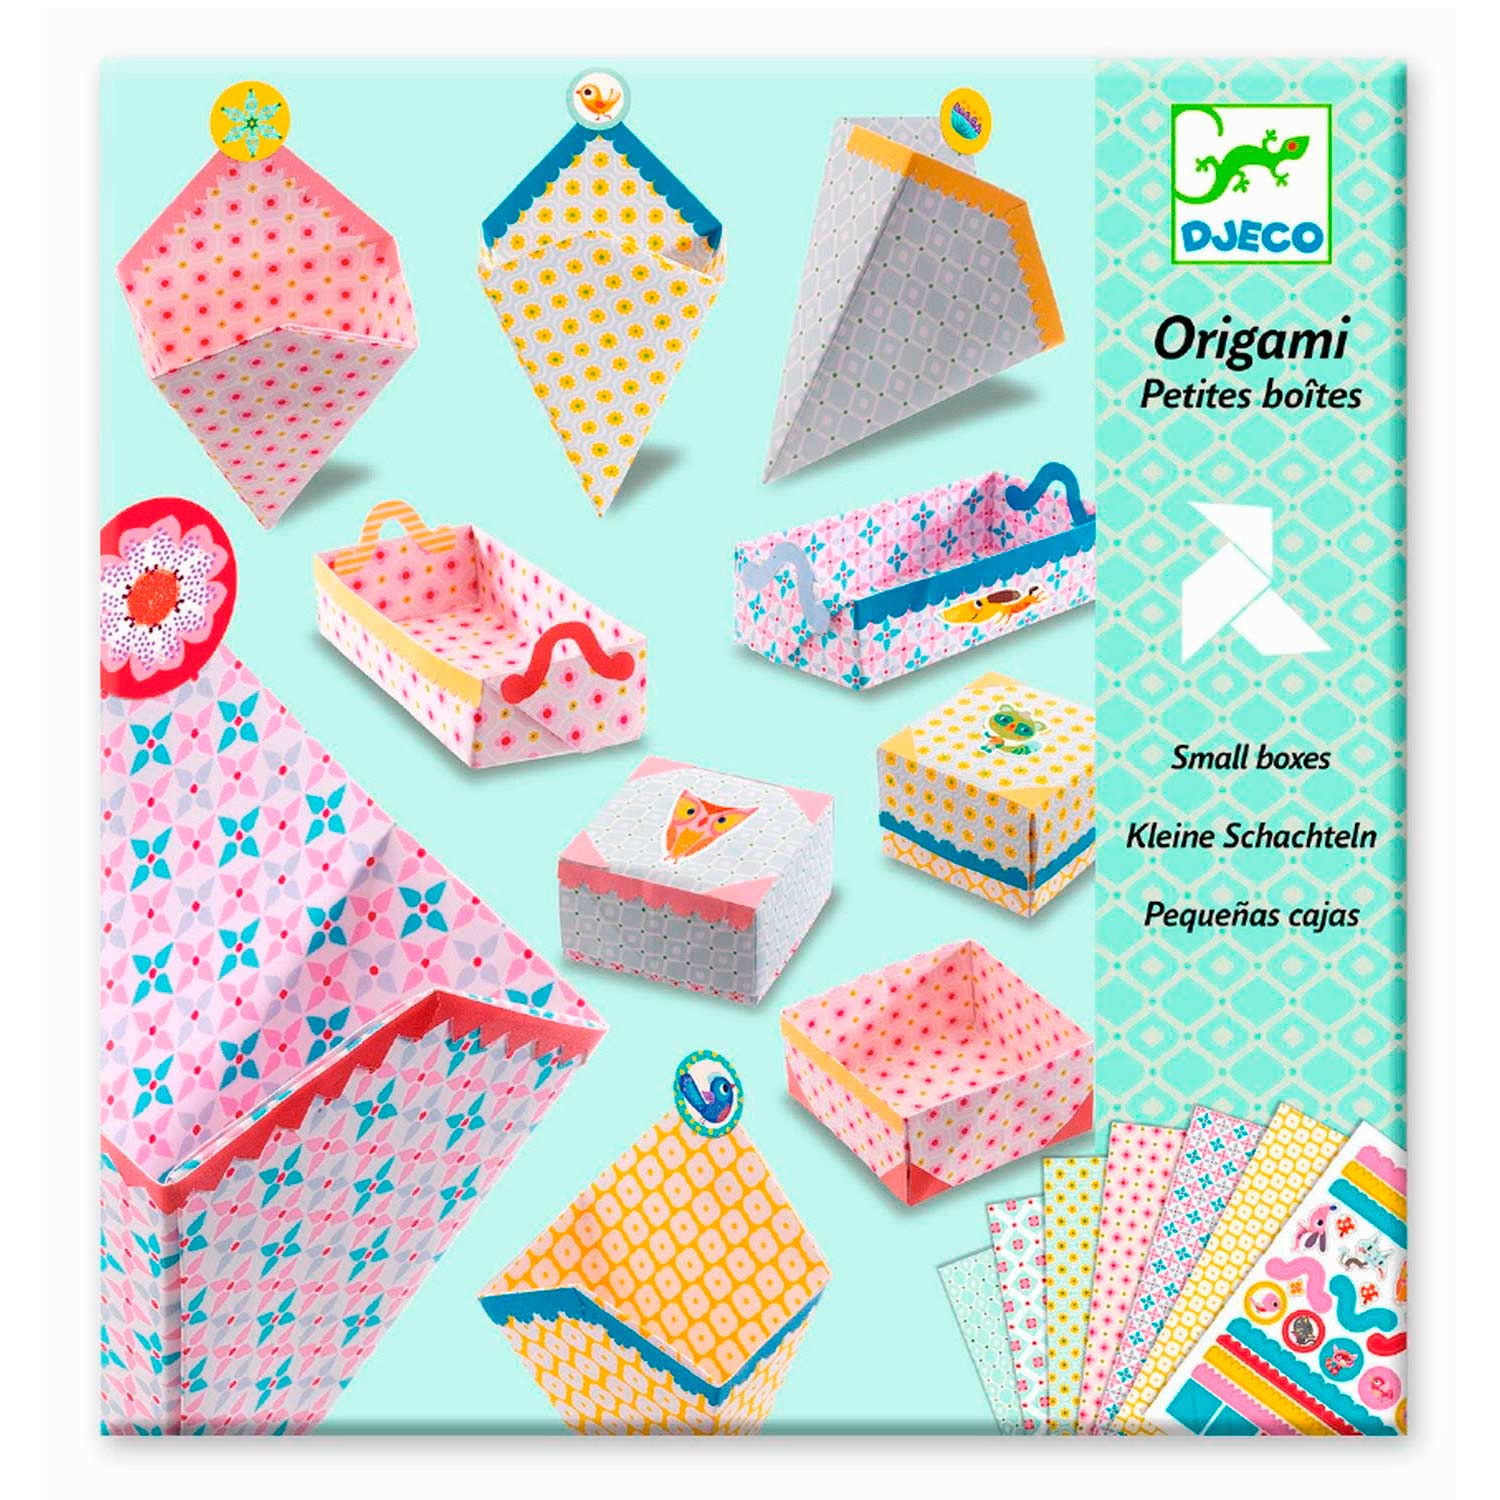 spontaan groet op vakantie Djeco Origami Doosjes Vouwen online kopen? | Lobbes Speelgoed